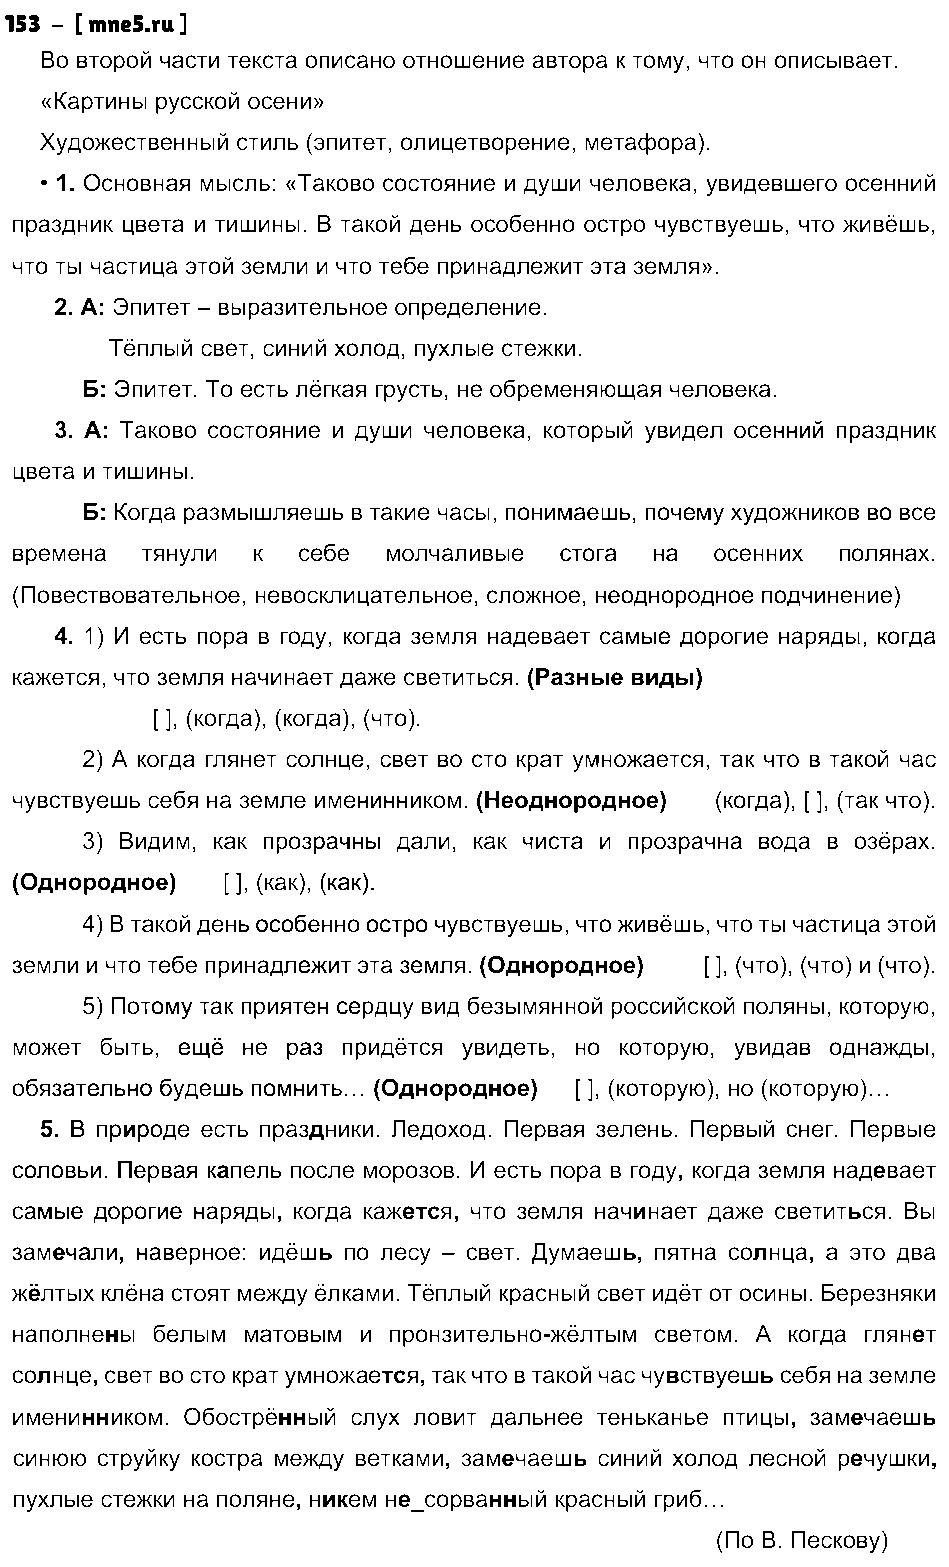 ГДЗ Русский язык 9 класс - 153